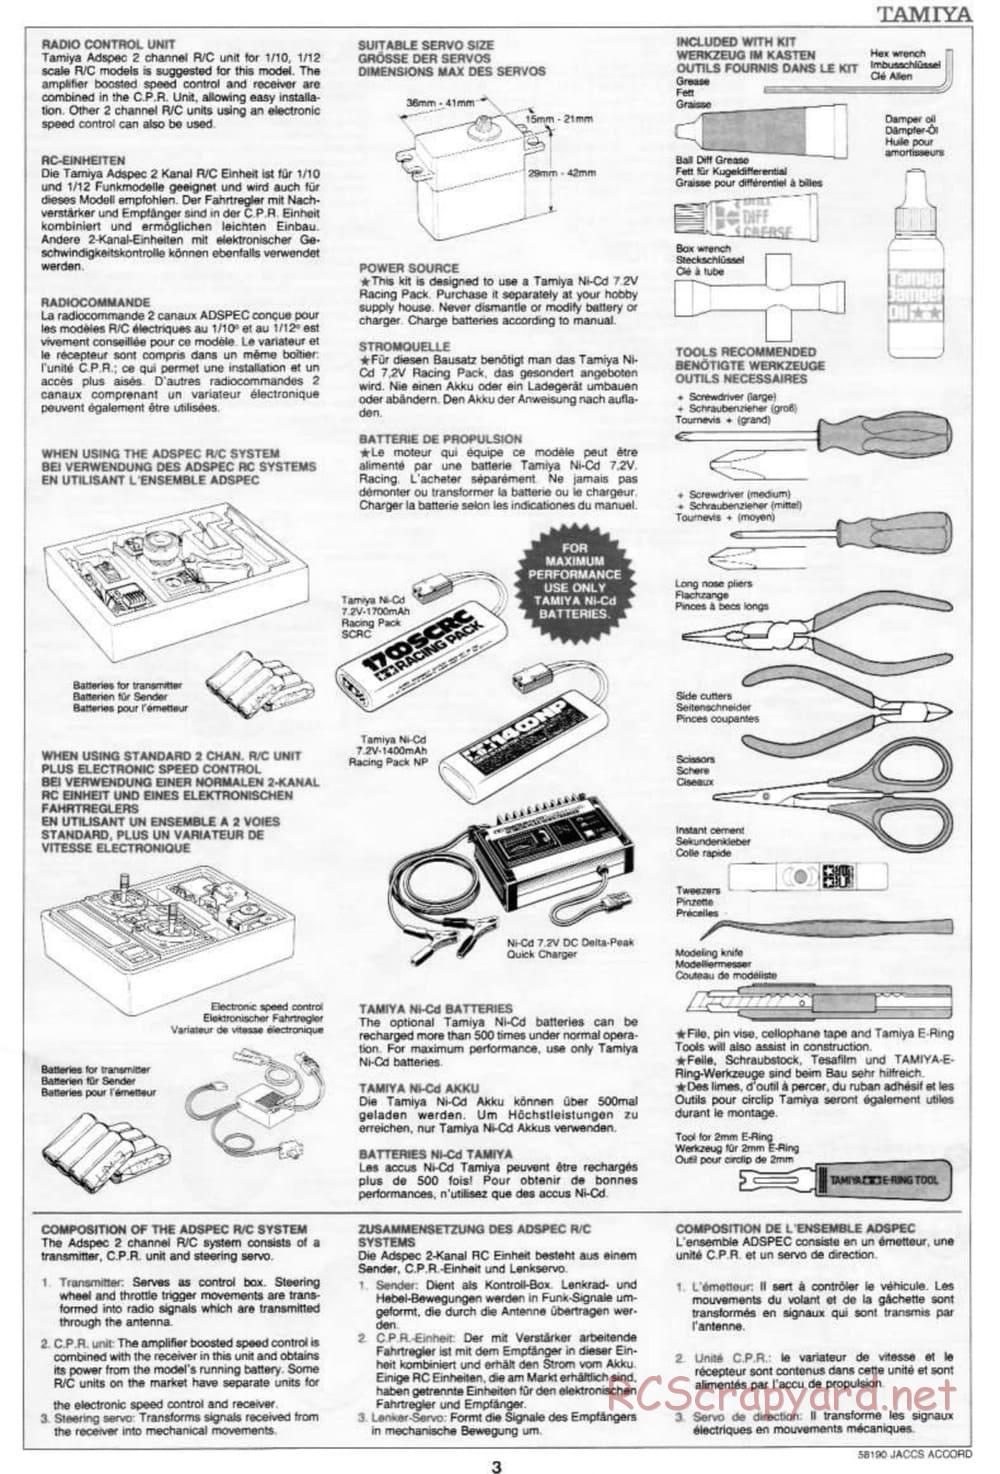 Tamiya - JACCS Honda Accord - FF-01 Chassis - Manual - Page 3